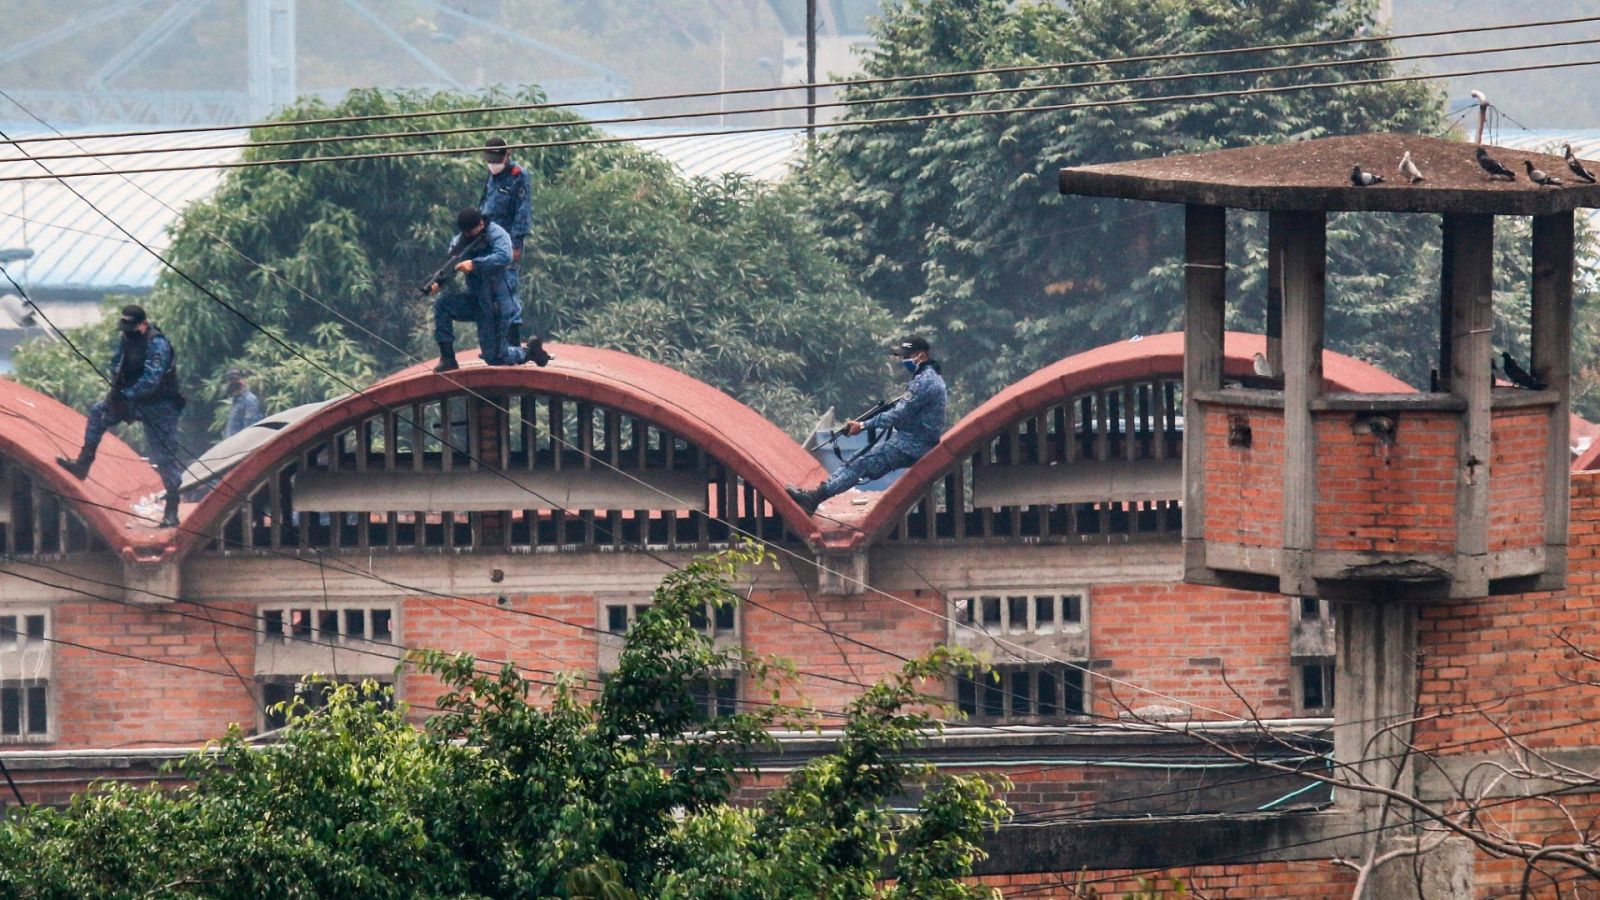  La policía antidisturbios hace guardia dentro de la prisión Modelo en Cúcuta, Colombia.